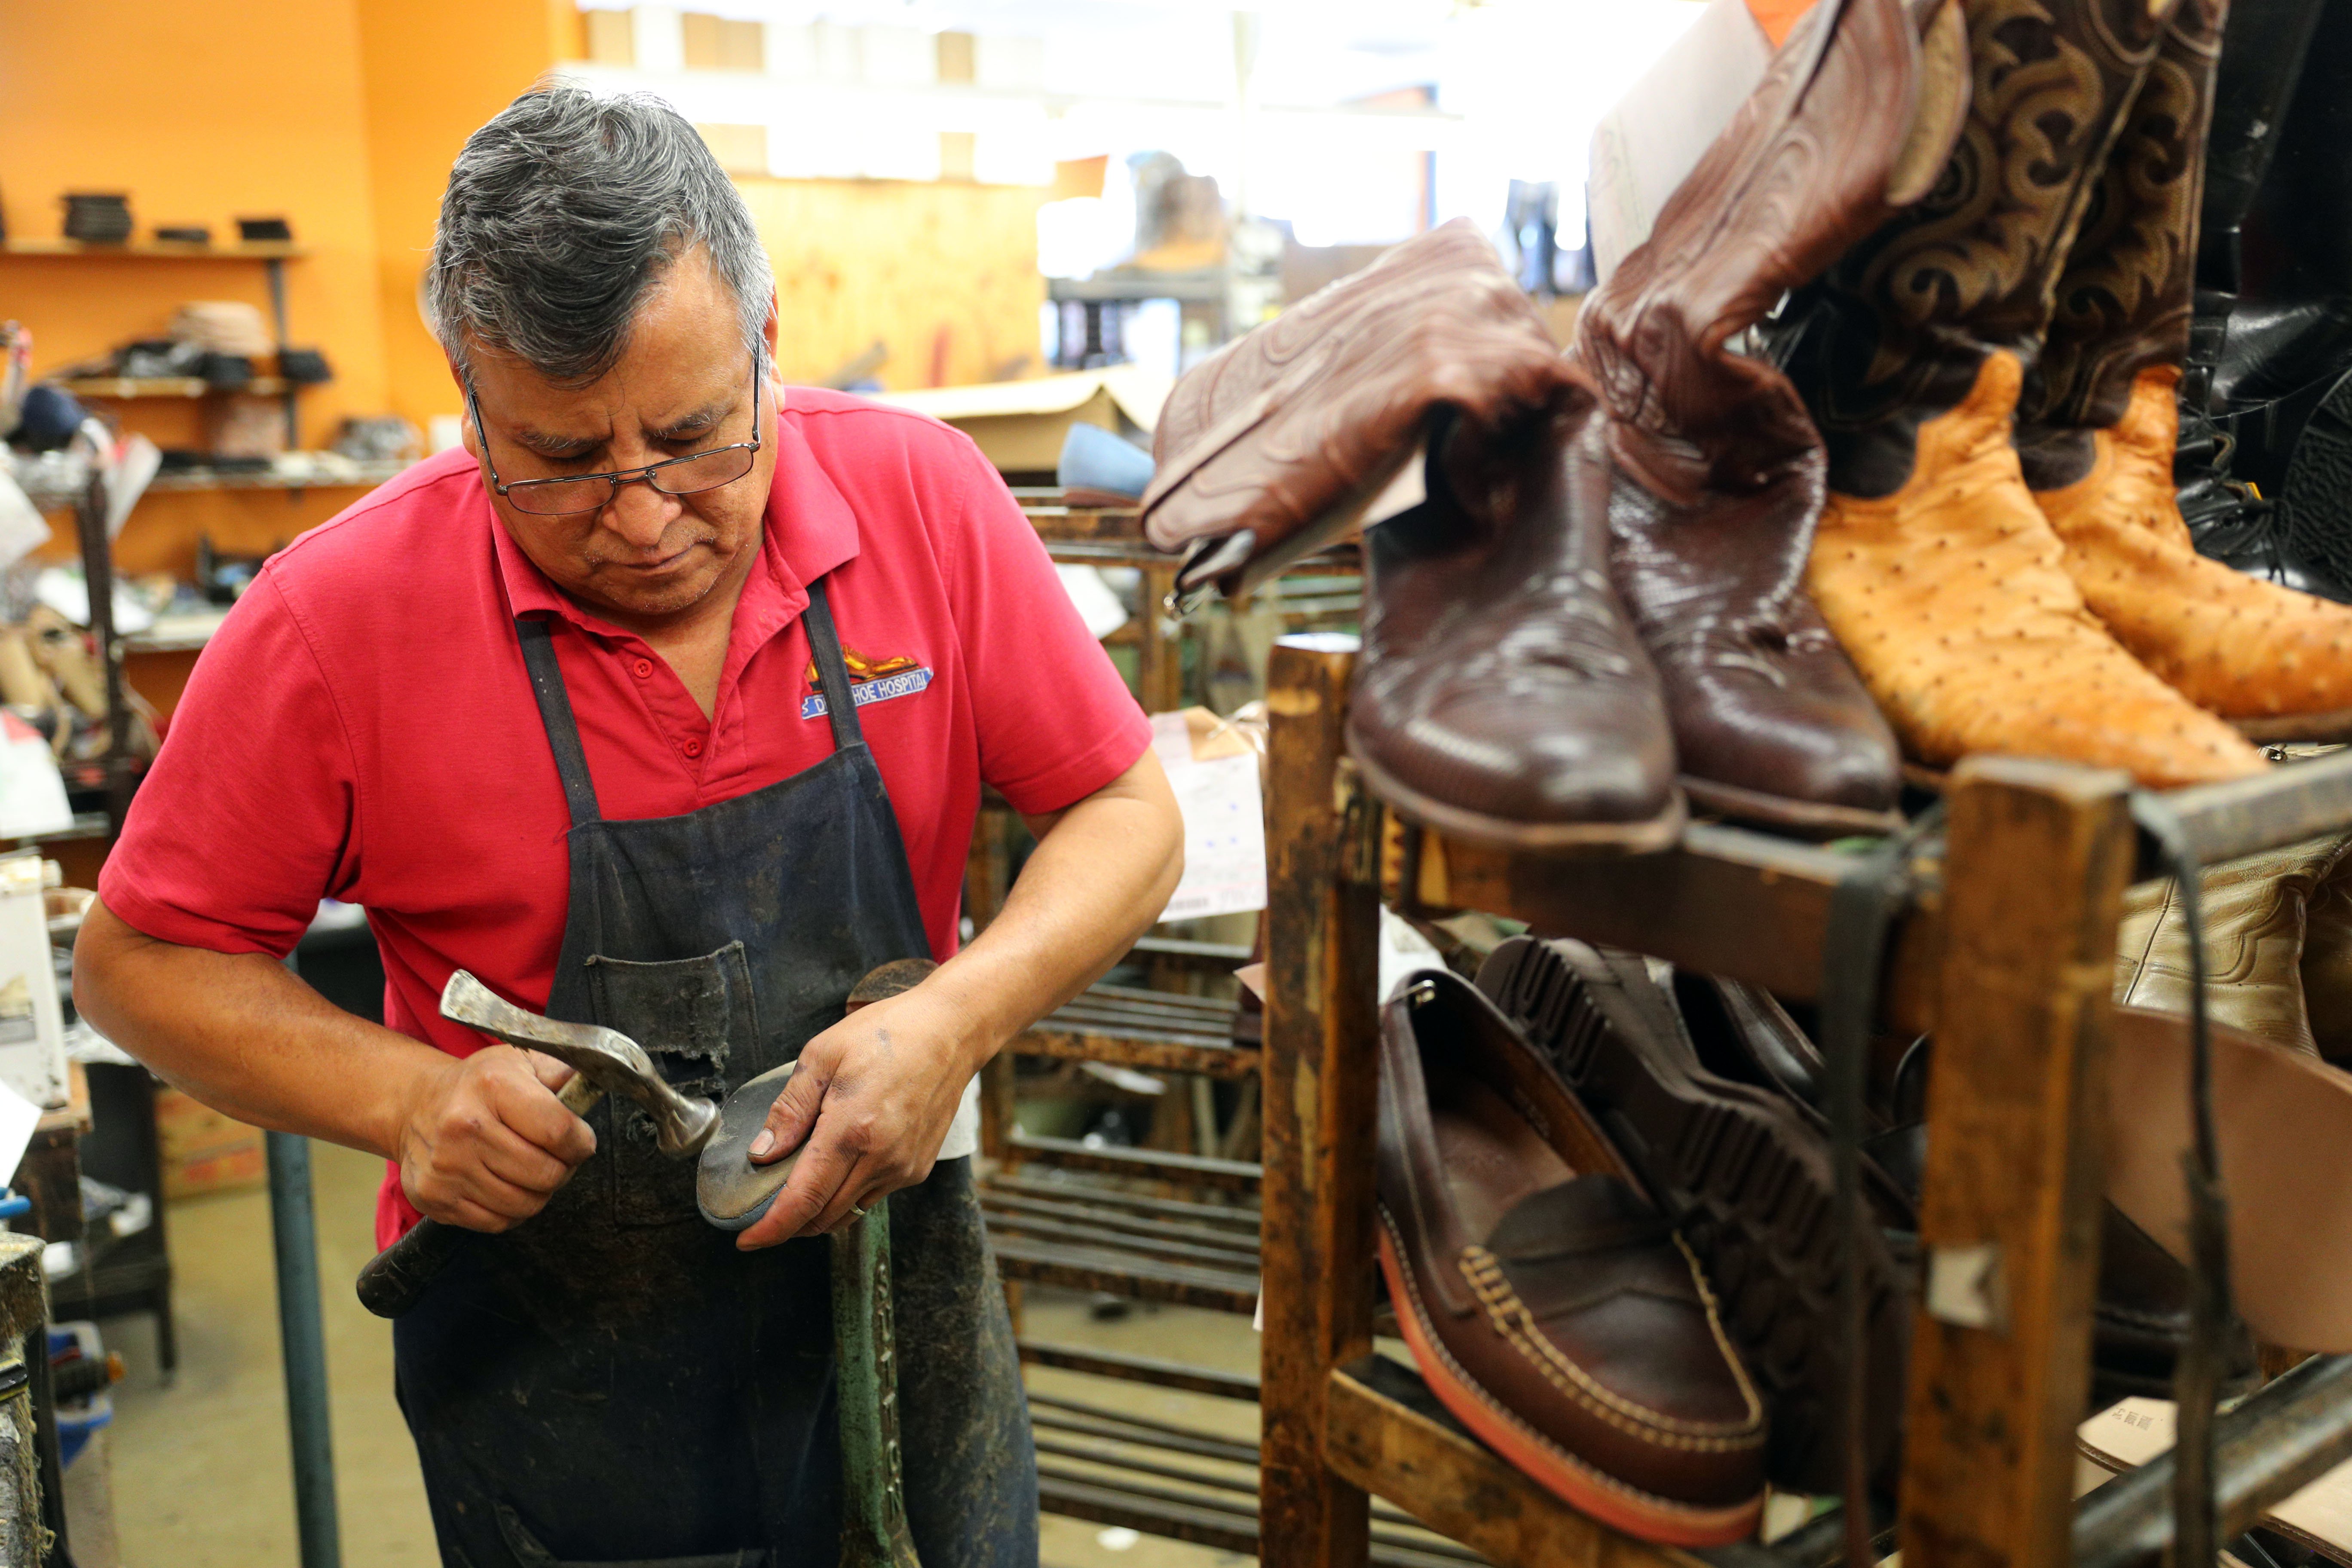 Shoe Repair Services, Leather Boot & Handbag Repairs